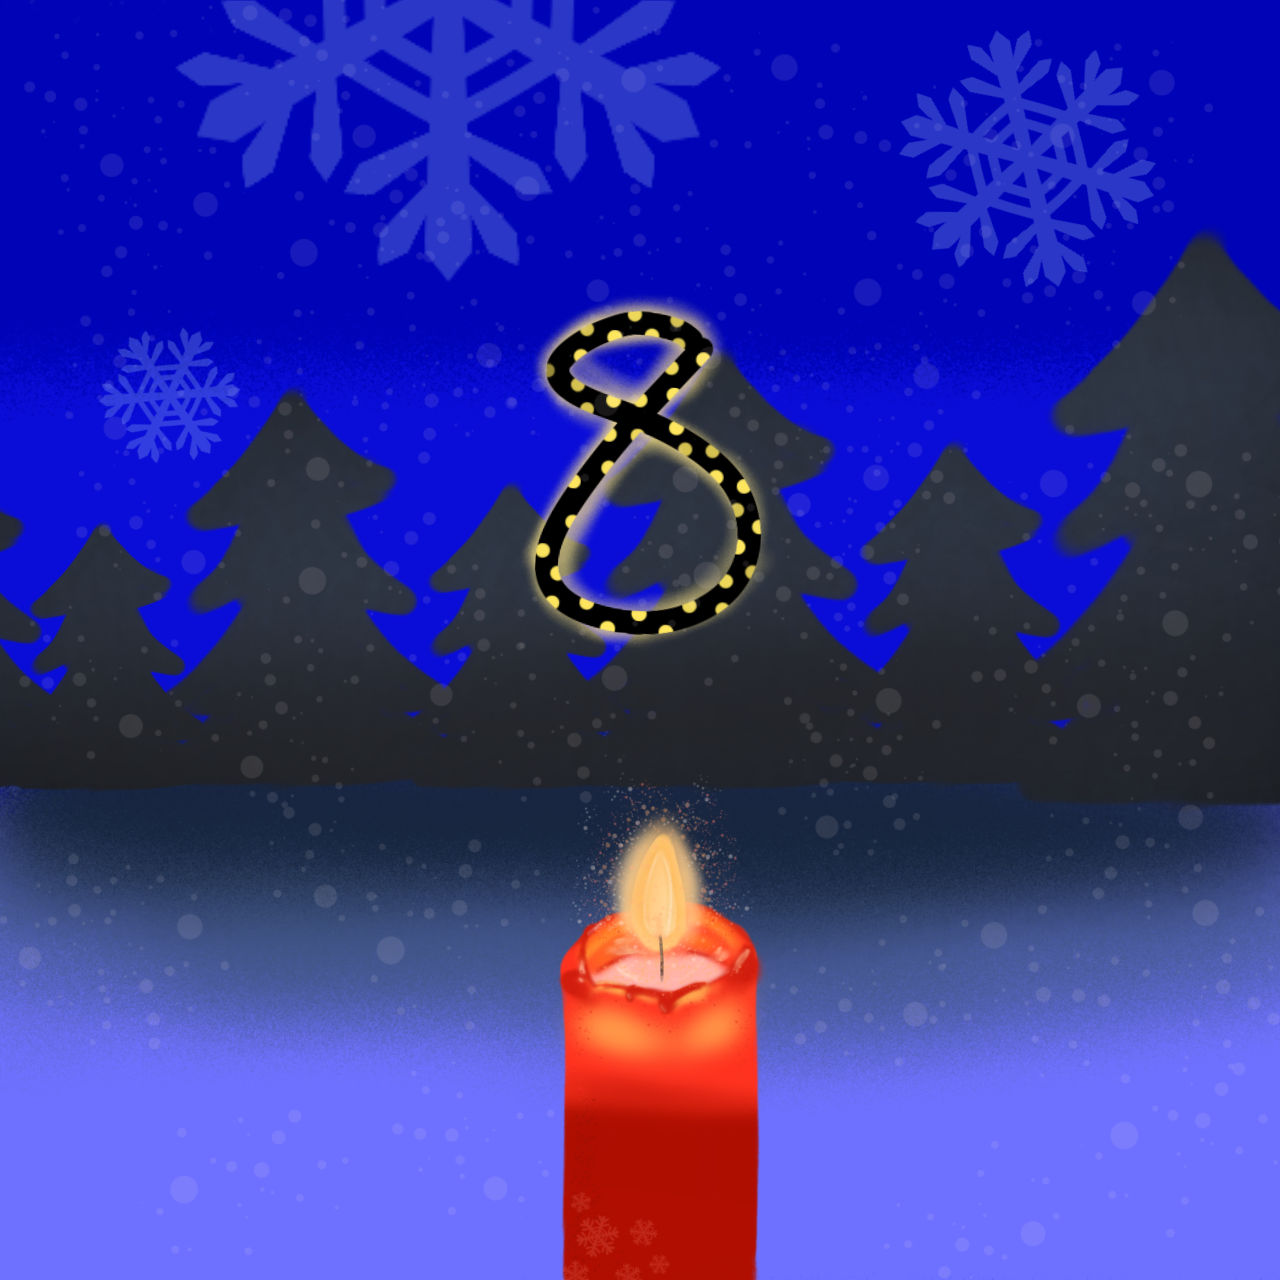 Ein blauer Hintergrund mit schwarzen Tannenbäumen. In der Mitte befindet sich die Nummer 8. Darunter ist eine rote Kerze.